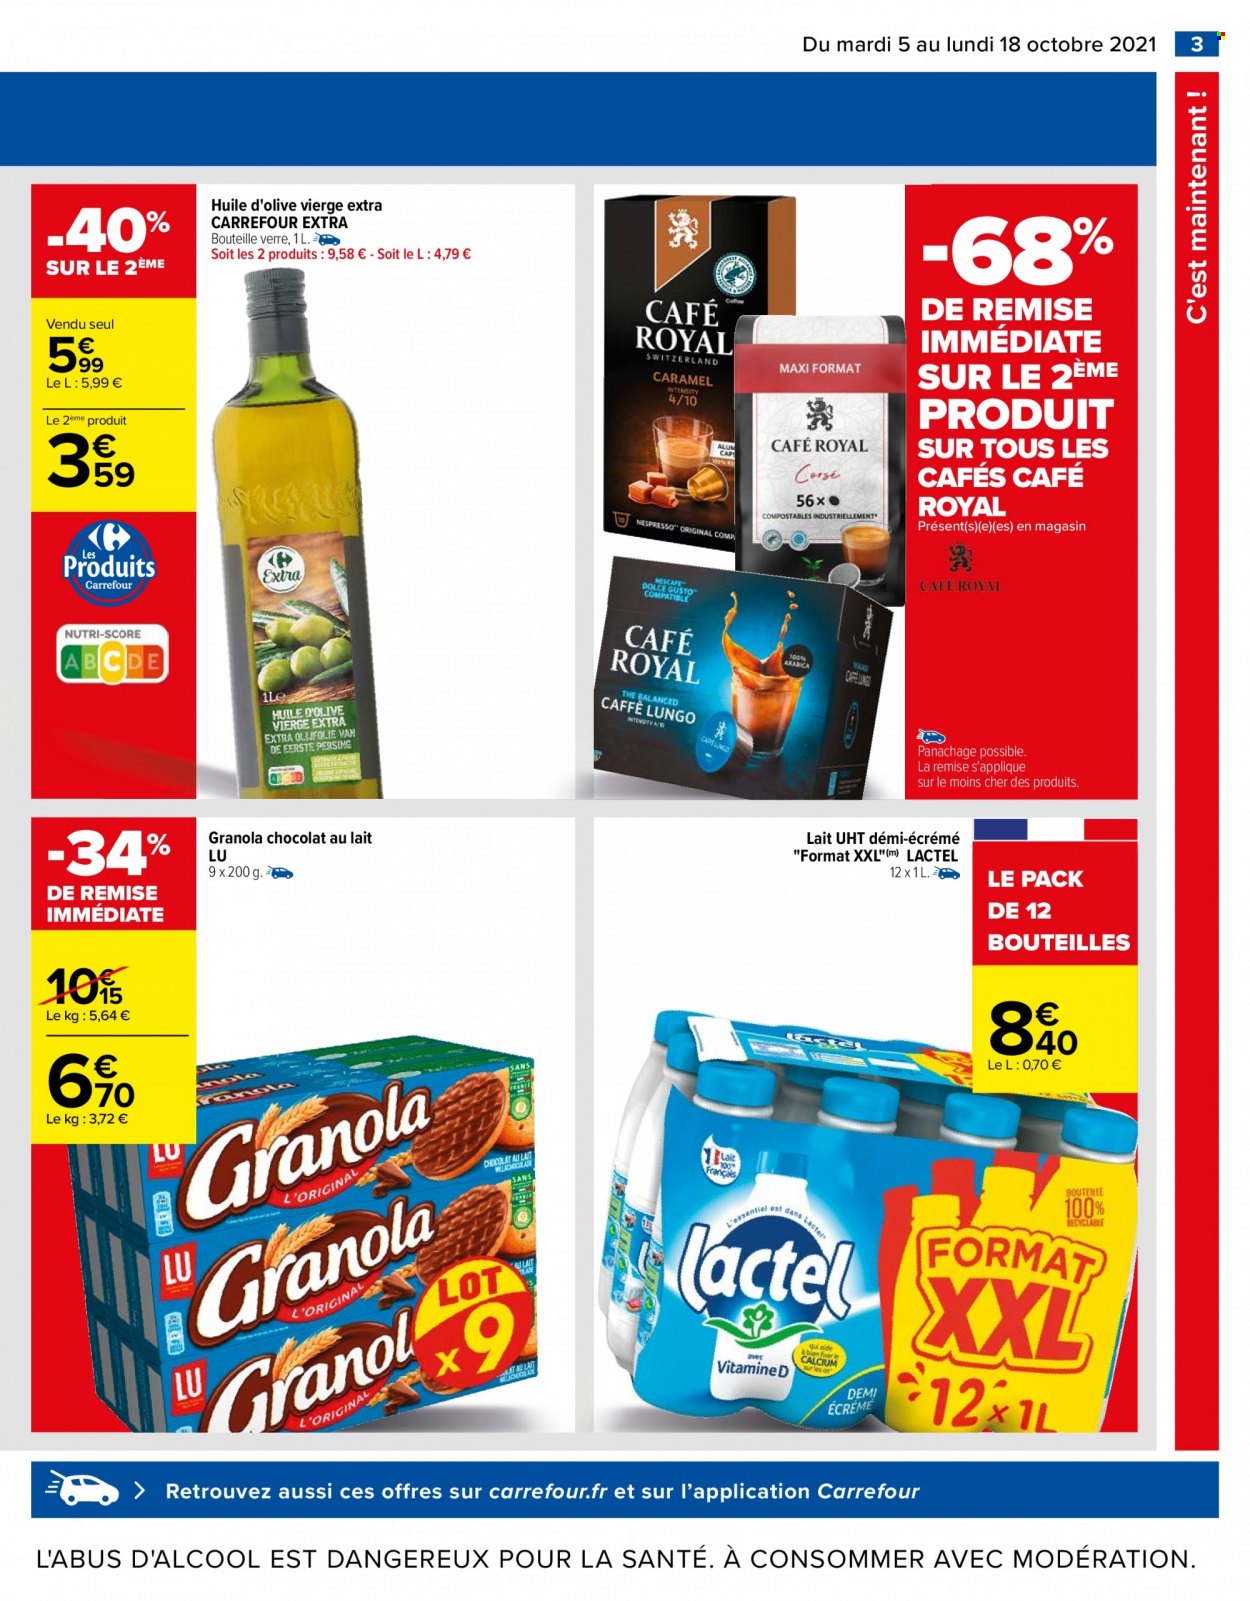 thumbnail - Catalogue Carrefour Hypermarchés - 05/10/2021 - 18/10/2021 - Produits soldés - Lactel, granola, LU, huile, huile d'olive vierge extra, huile d'olive, café, verre. Page 3.